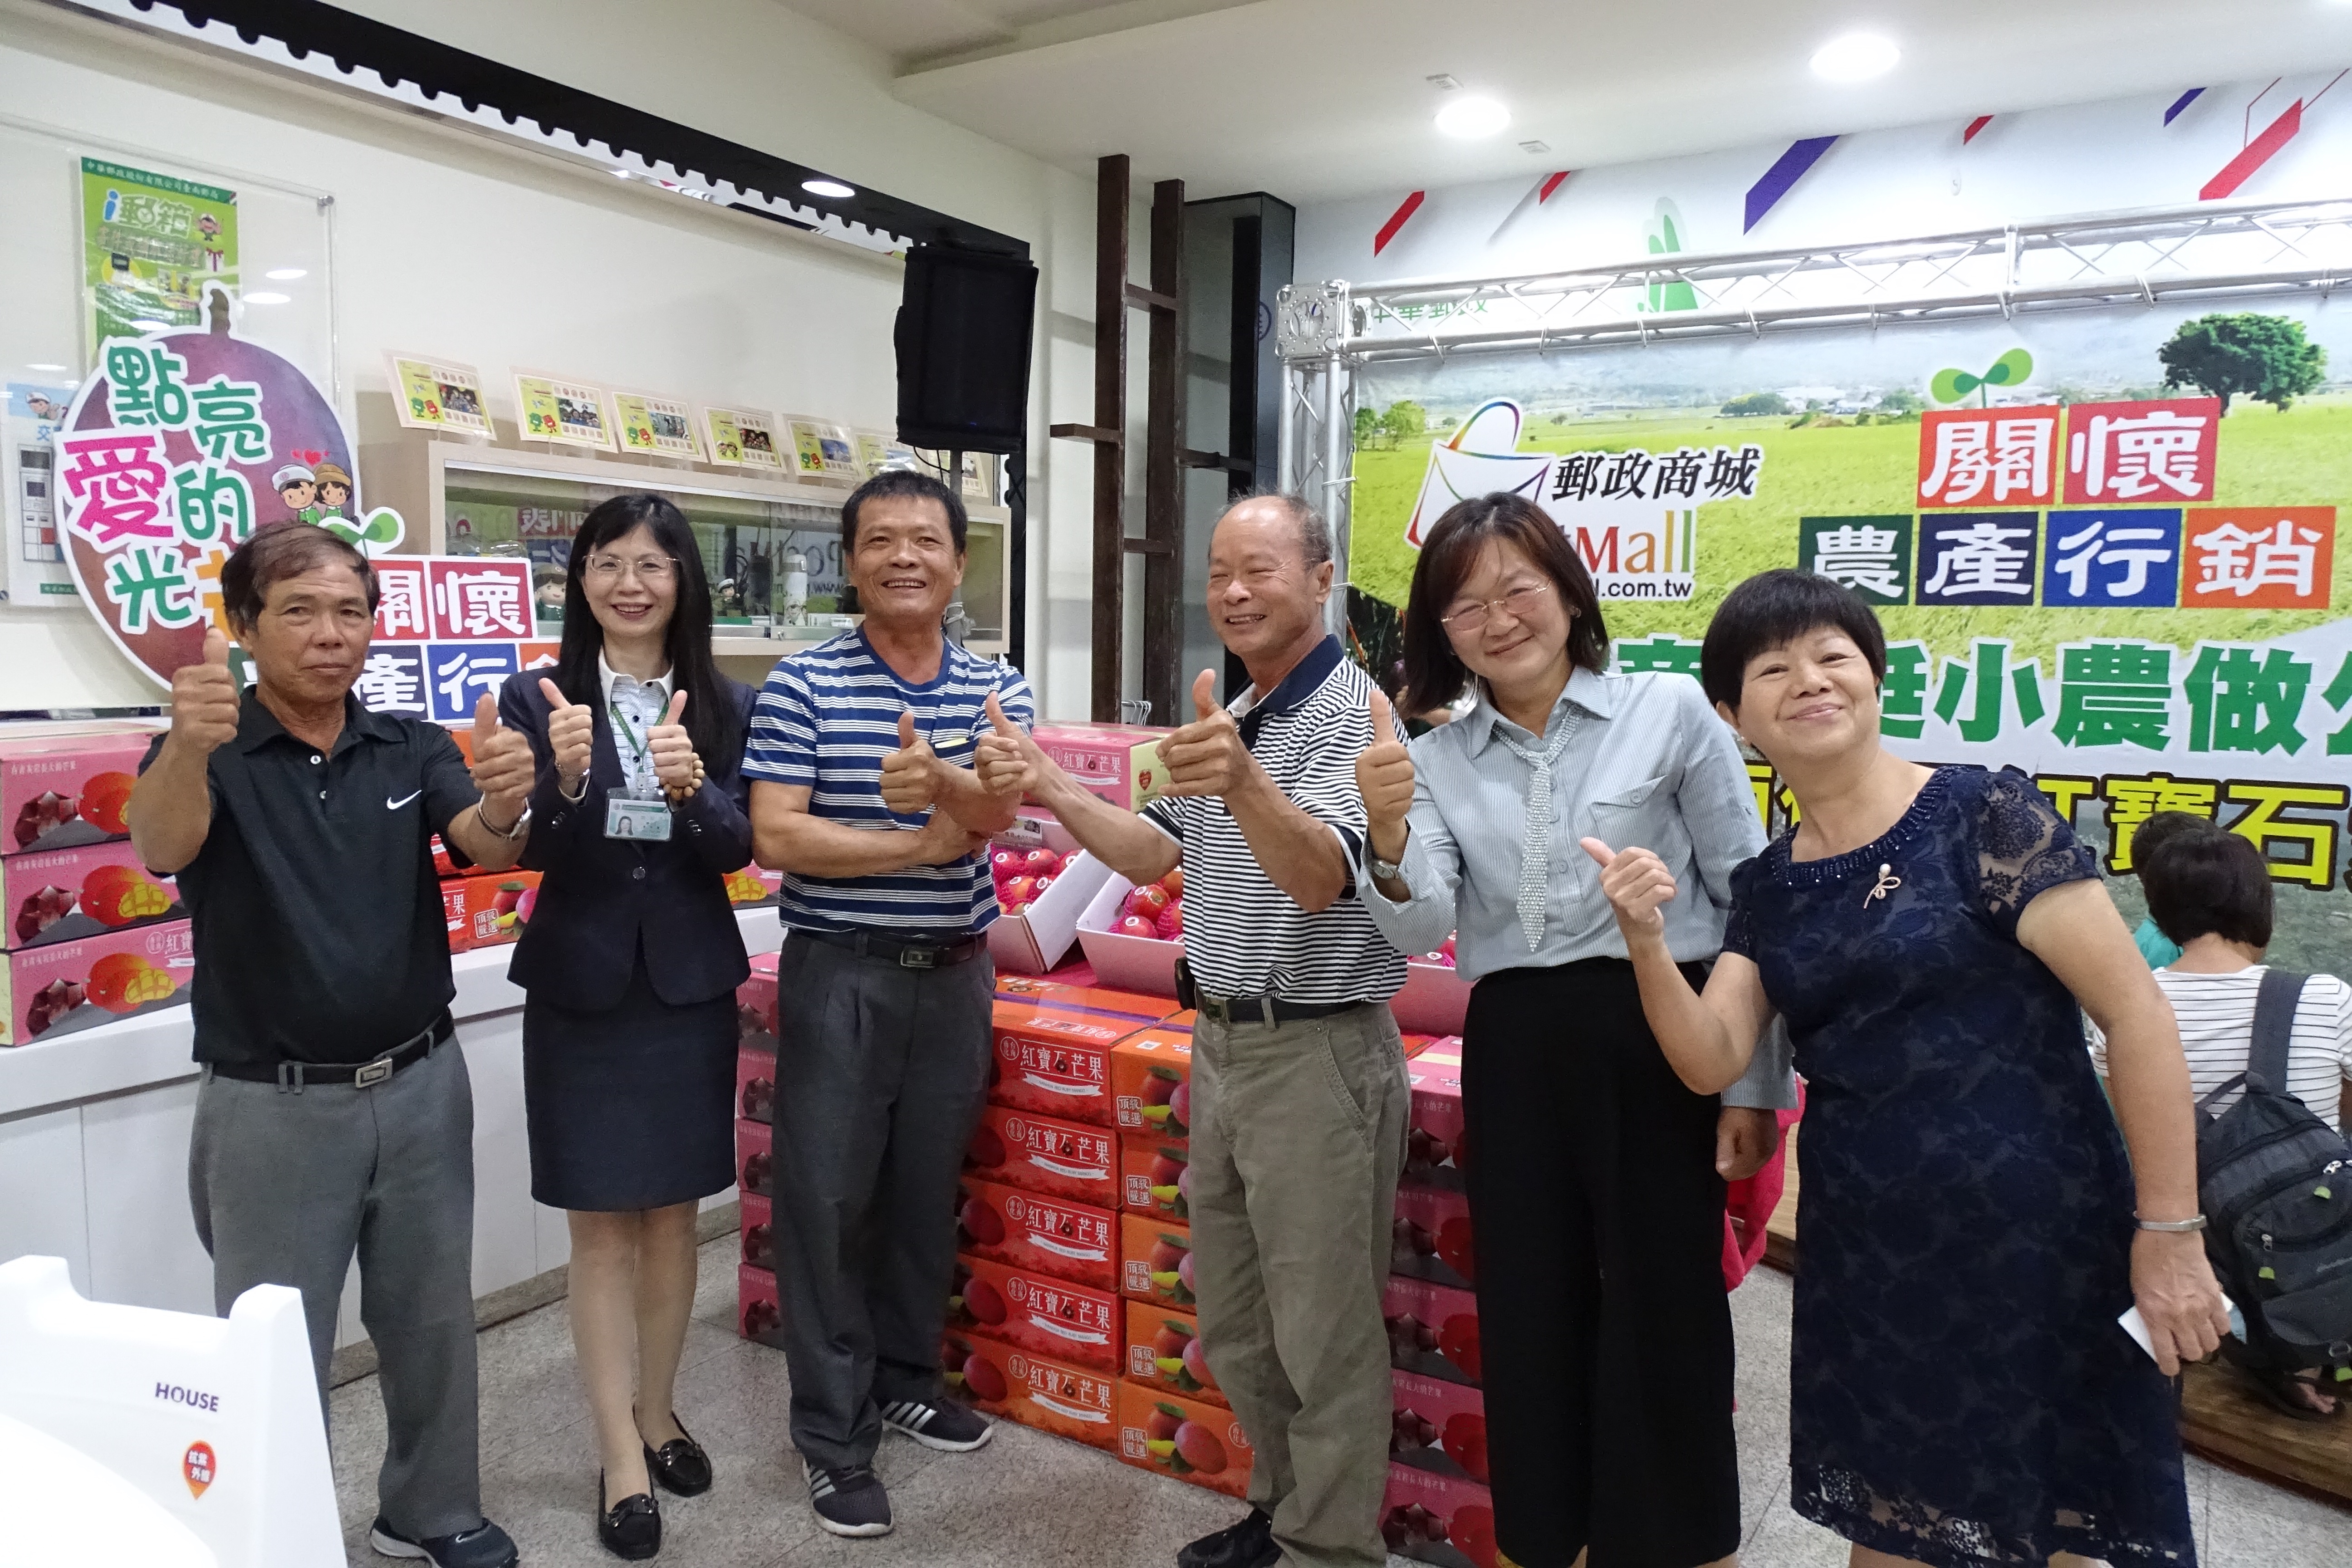 臺南郵局關懷農產行銷挺小農做公益記者會-紅寶石愛文芒果」上市